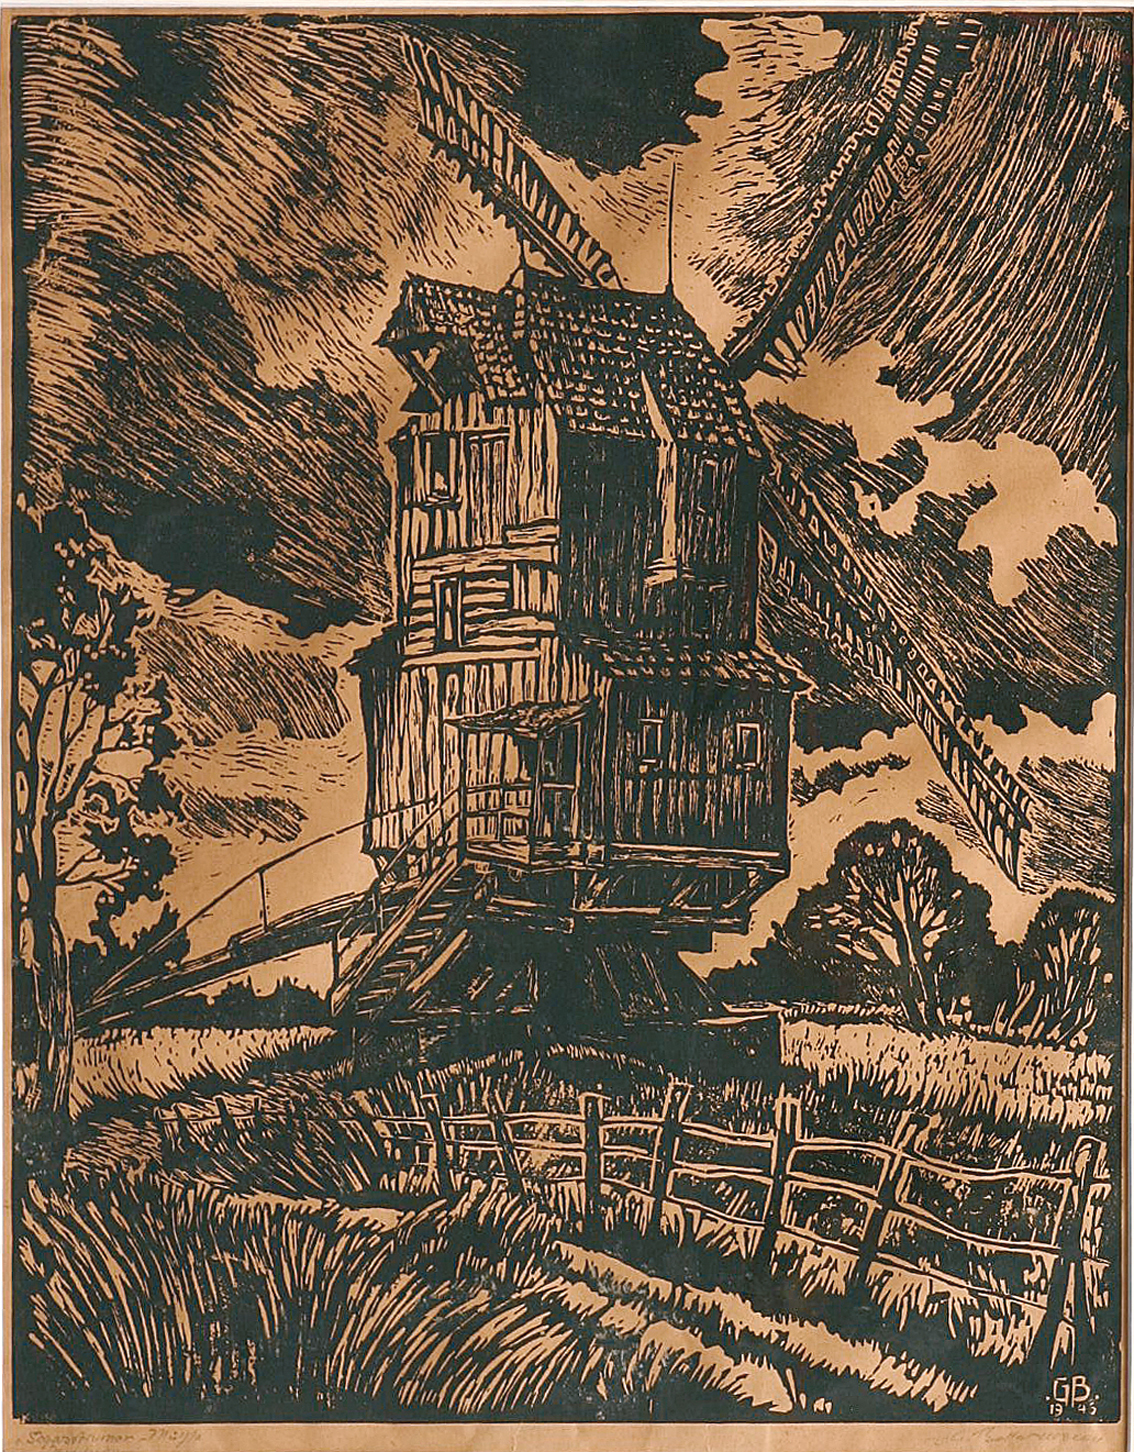 "The windmill of Schwastrum"